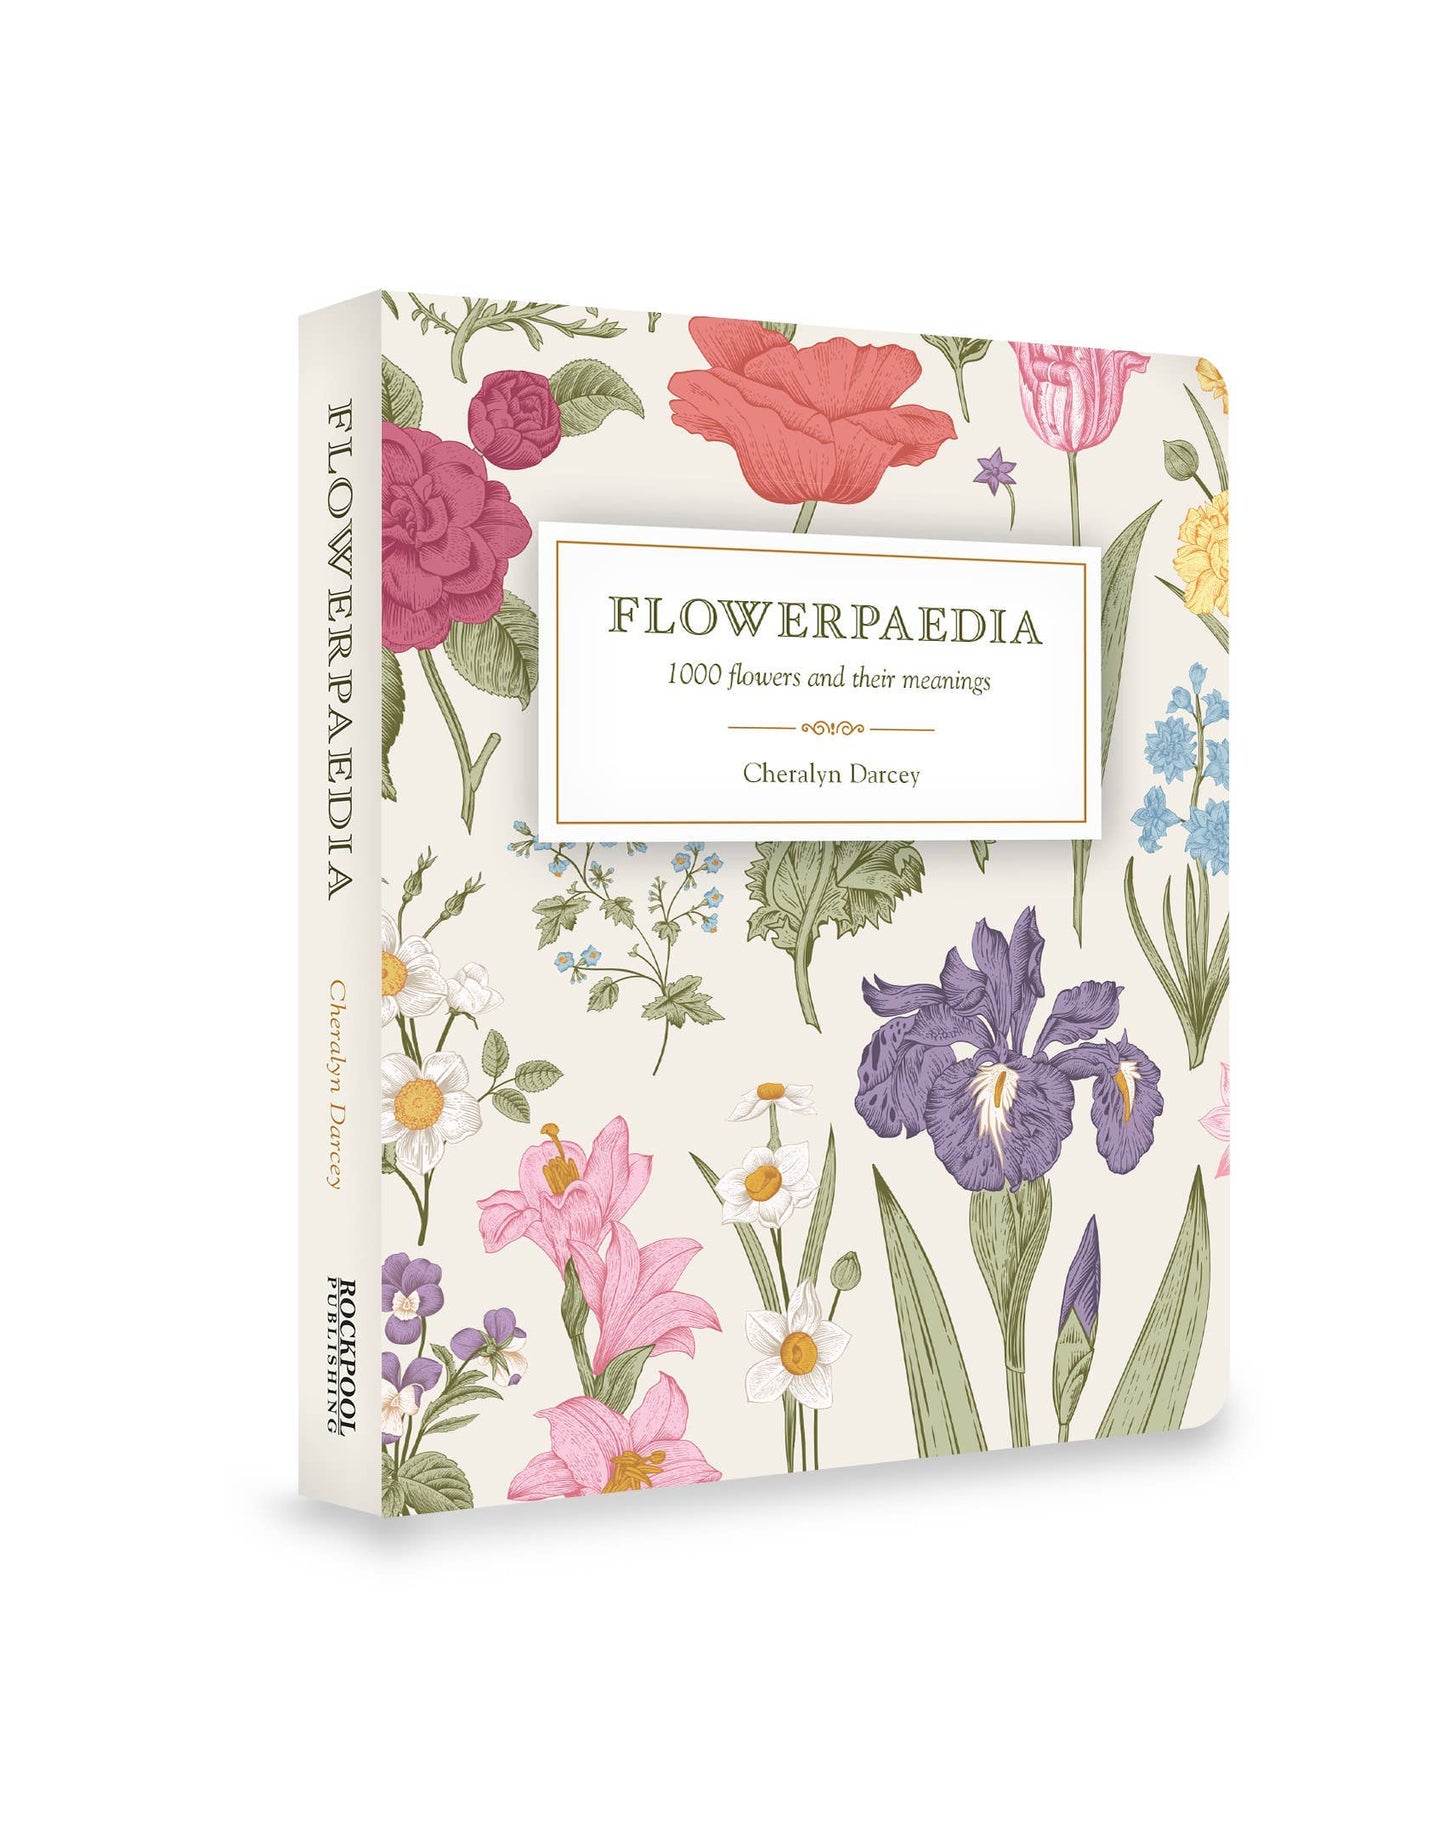 Flowerpaedia: 1000 Flowers and Their Meanings